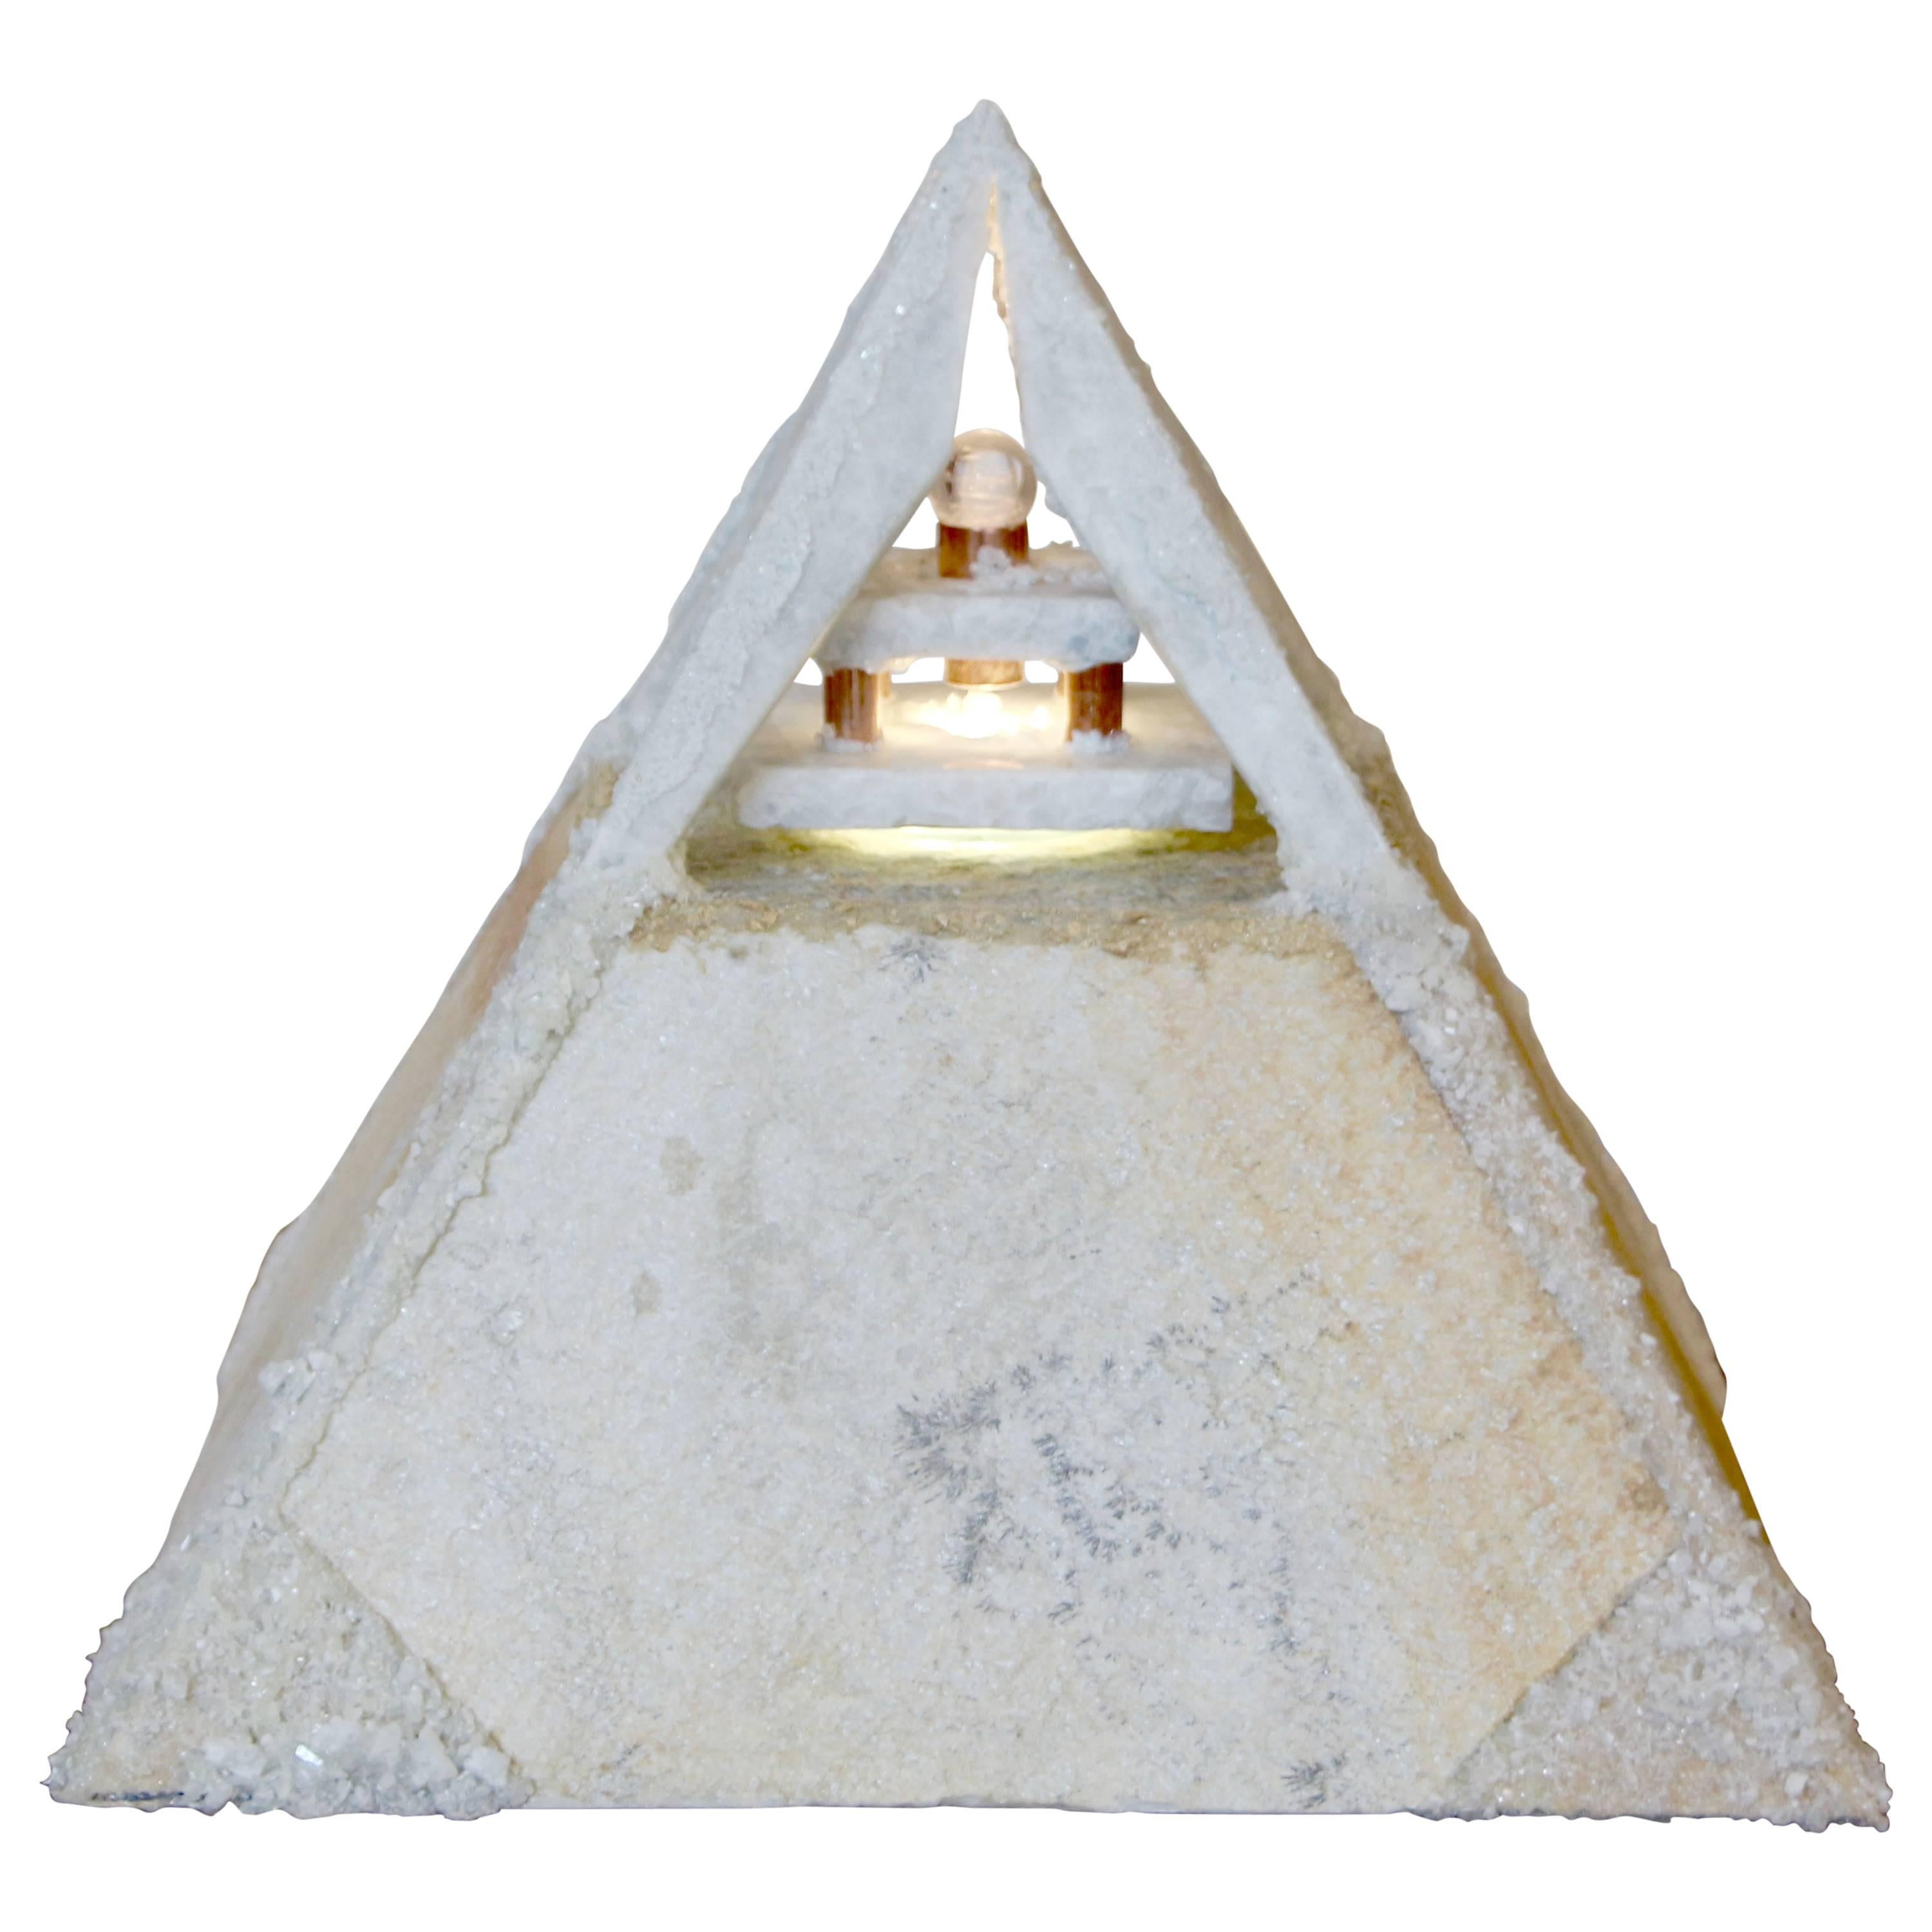 Wonderful Pyramidal Lamp of Quartzite and Quartz